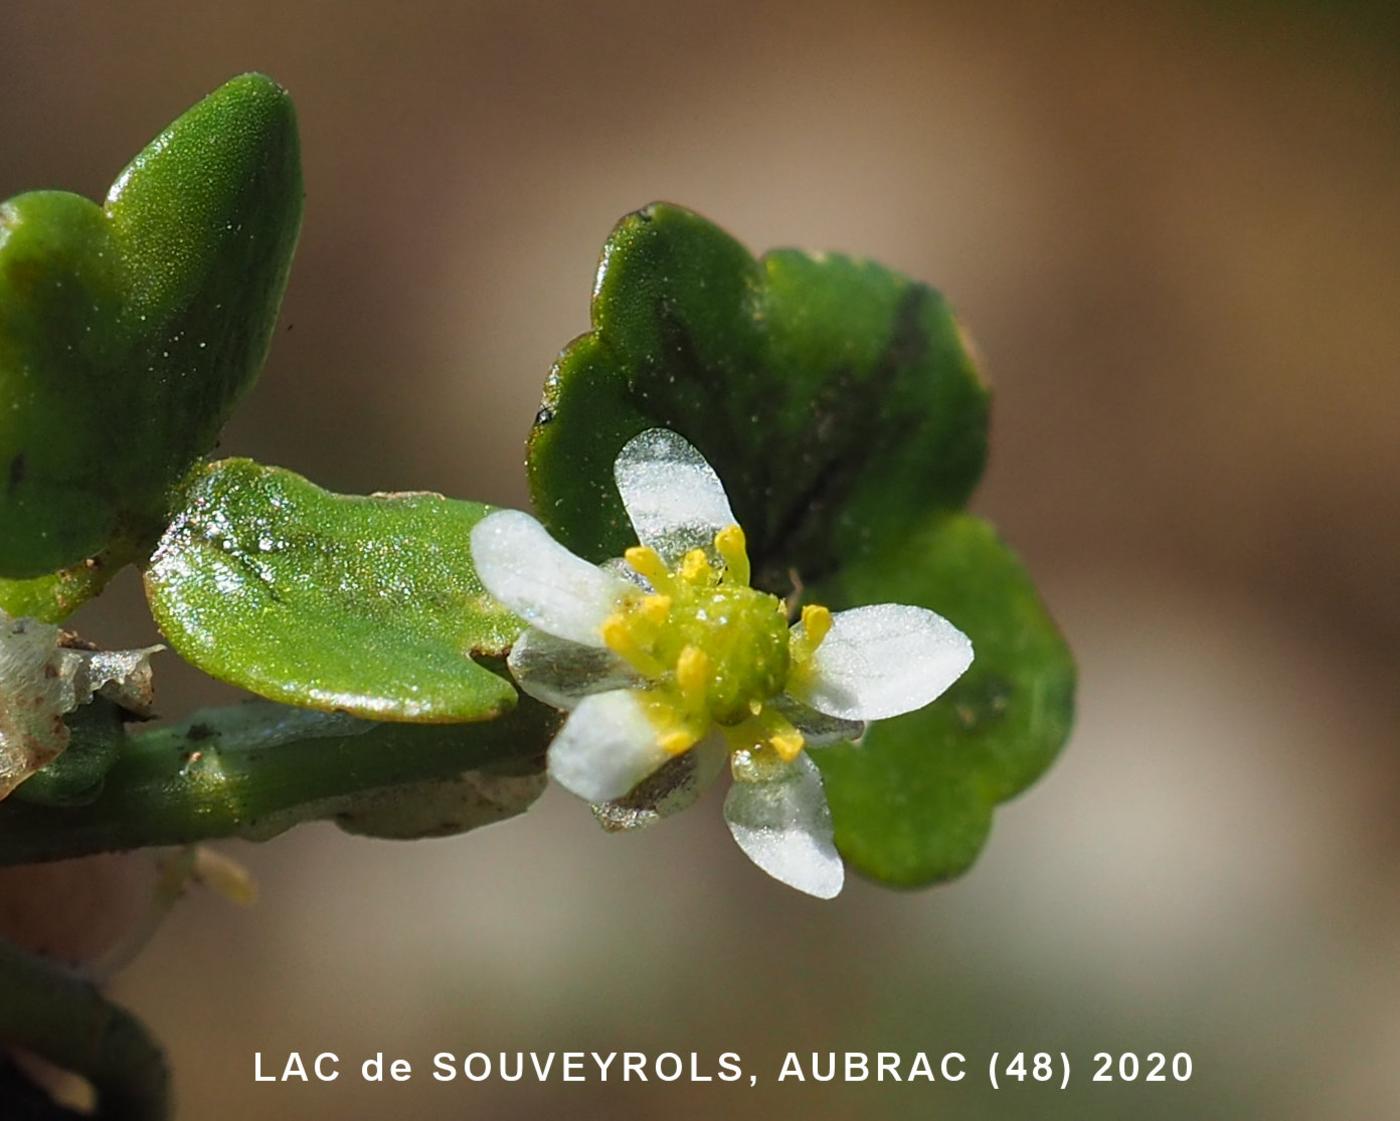 Crowfoot, Ivy-leaved flower